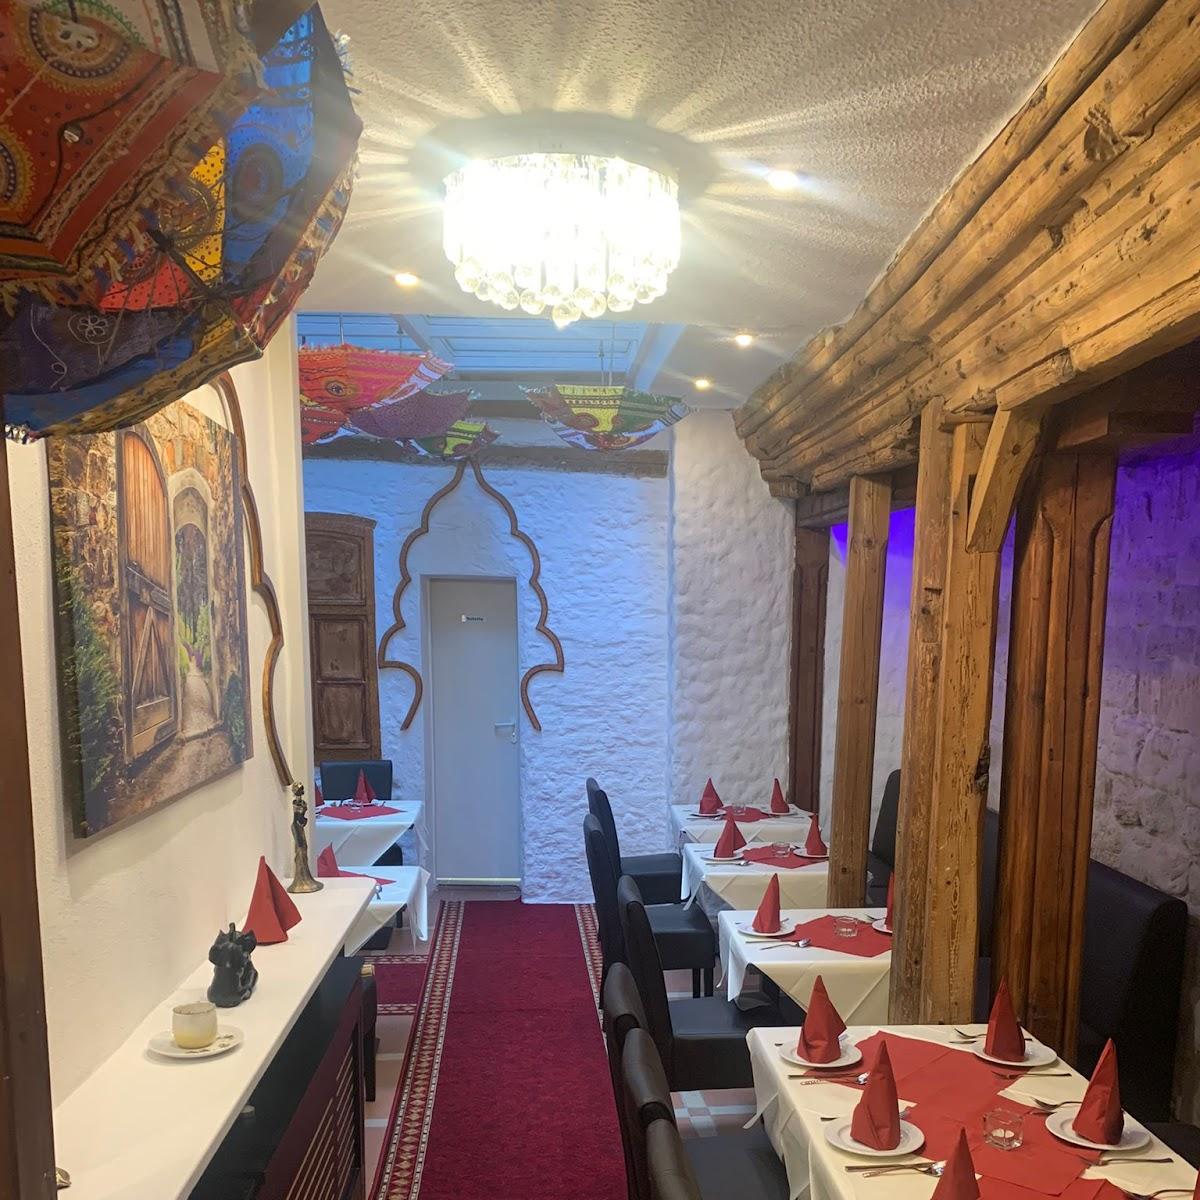 Restaurant "Tandoori Haus" in Coburg